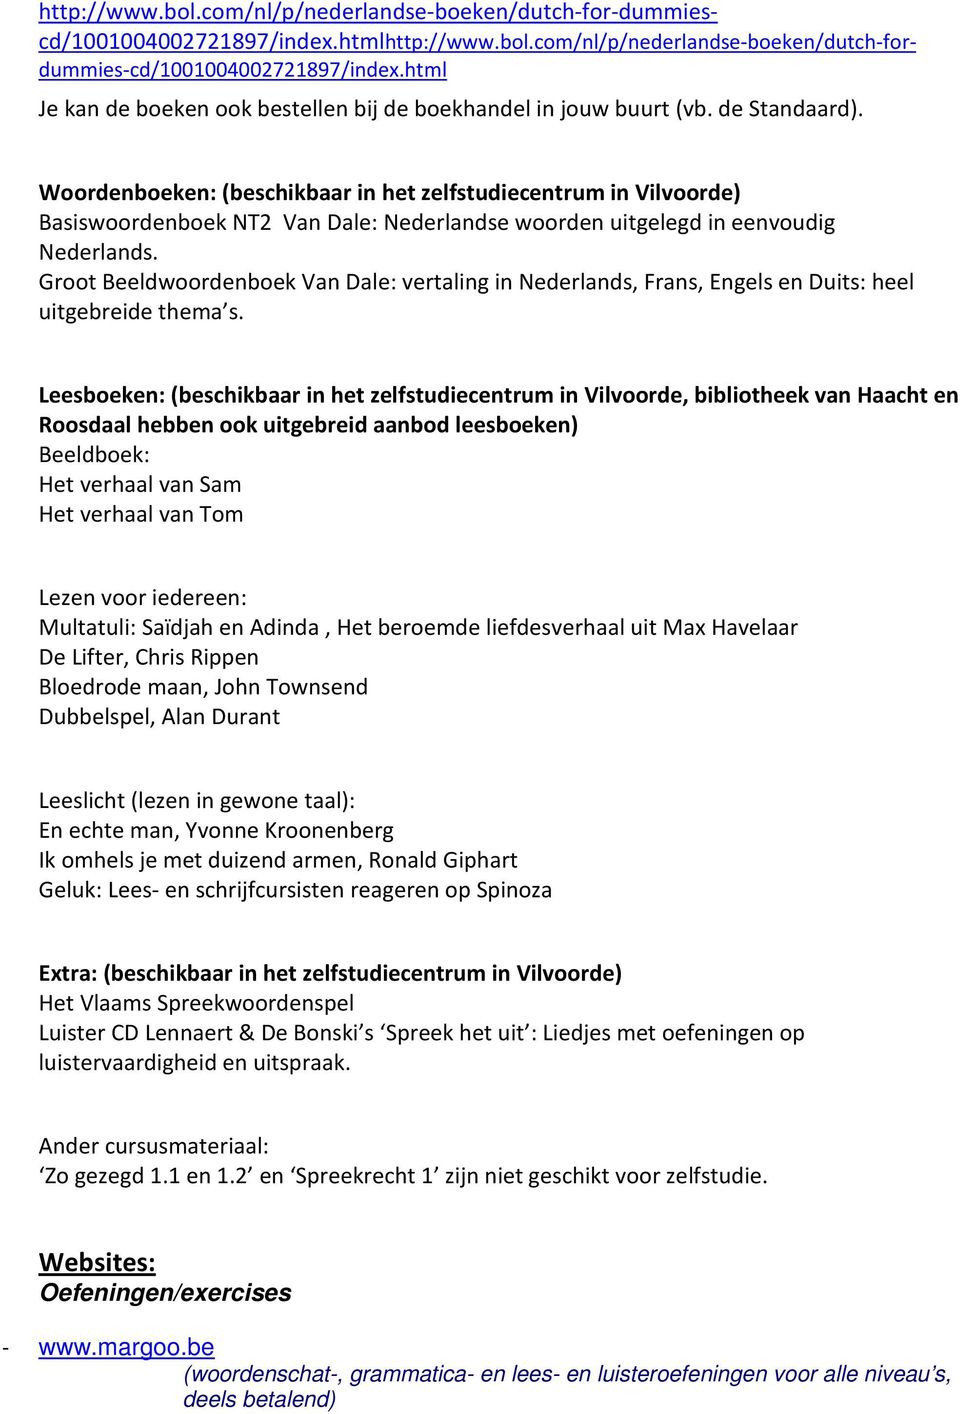 Woordenboeken: (beschikbaar in het zelfstudiecentrum in Vilvoorde) Basiswoordenboek NT2 Van Dale: Nederlandse woorden uitgelegd in eenvoudig Nederlands.